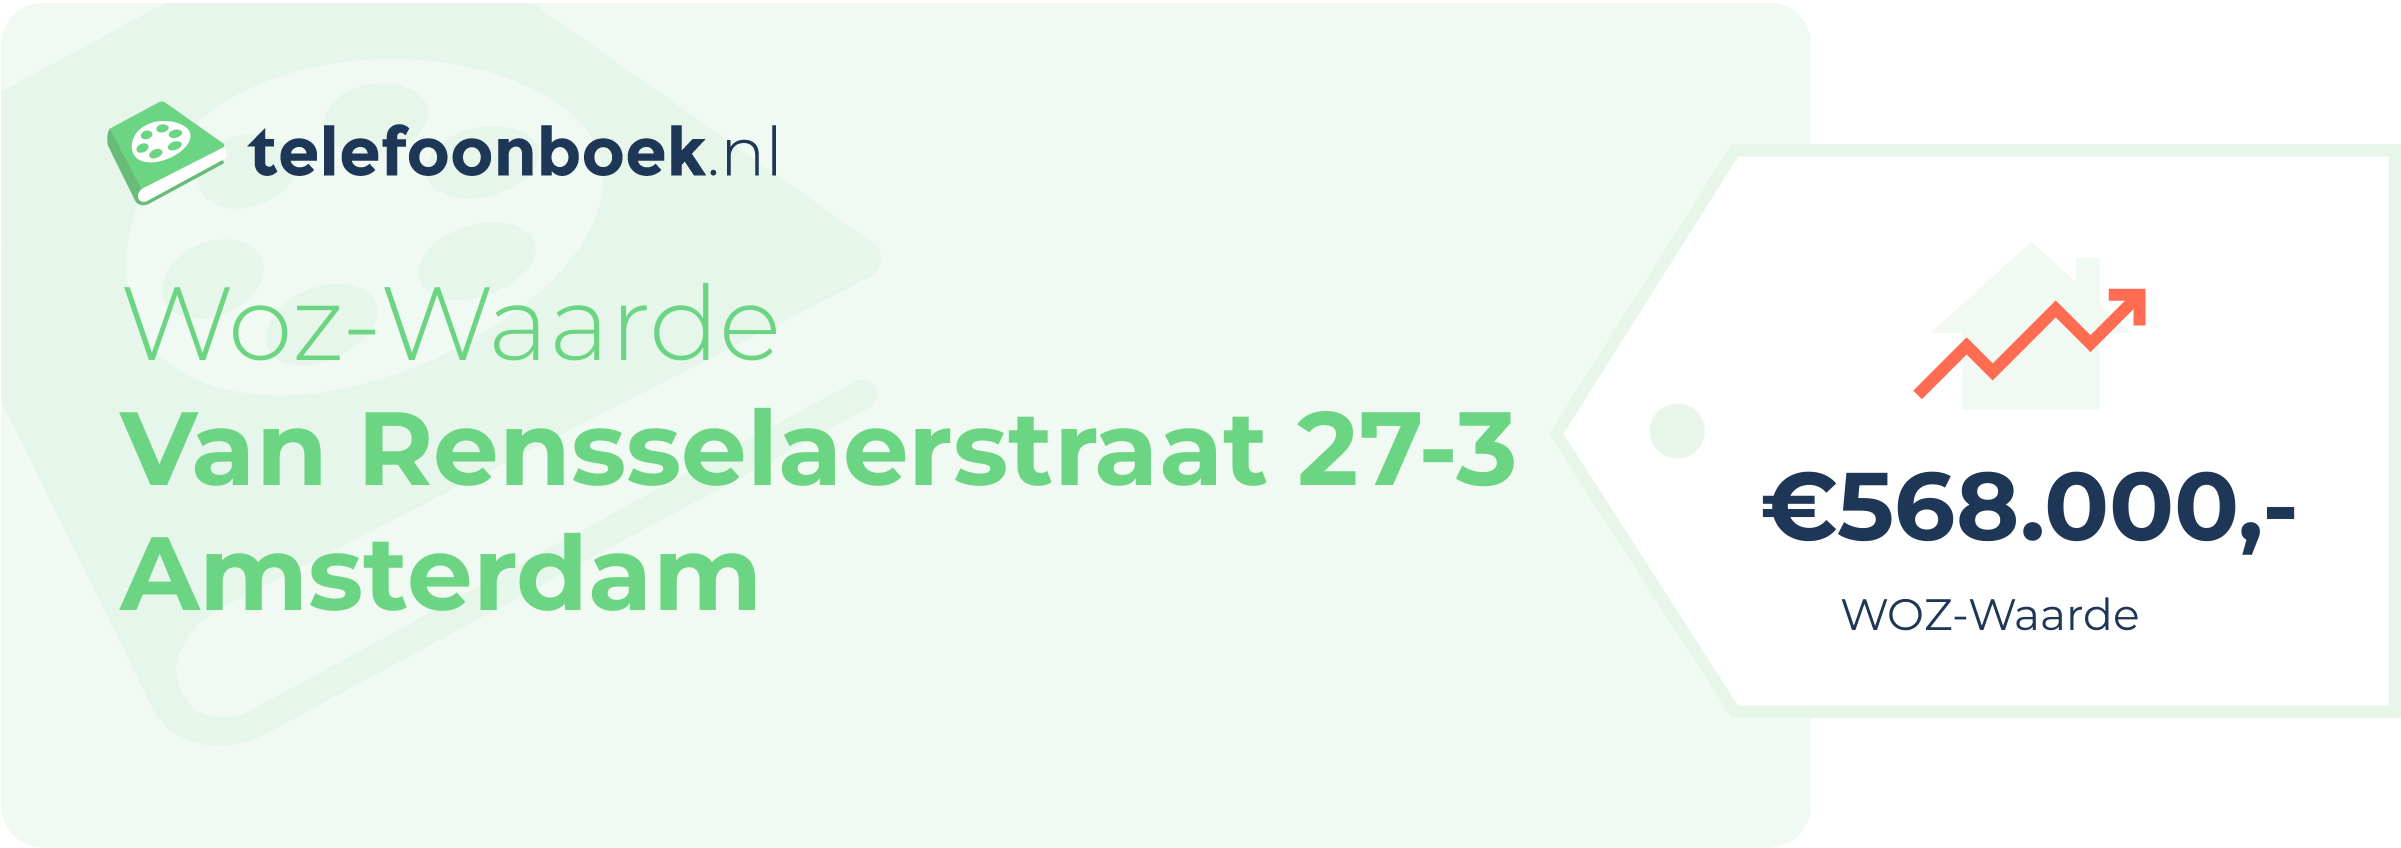 WOZ-waarde Van Rensselaerstraat 27-3 Amsterdam